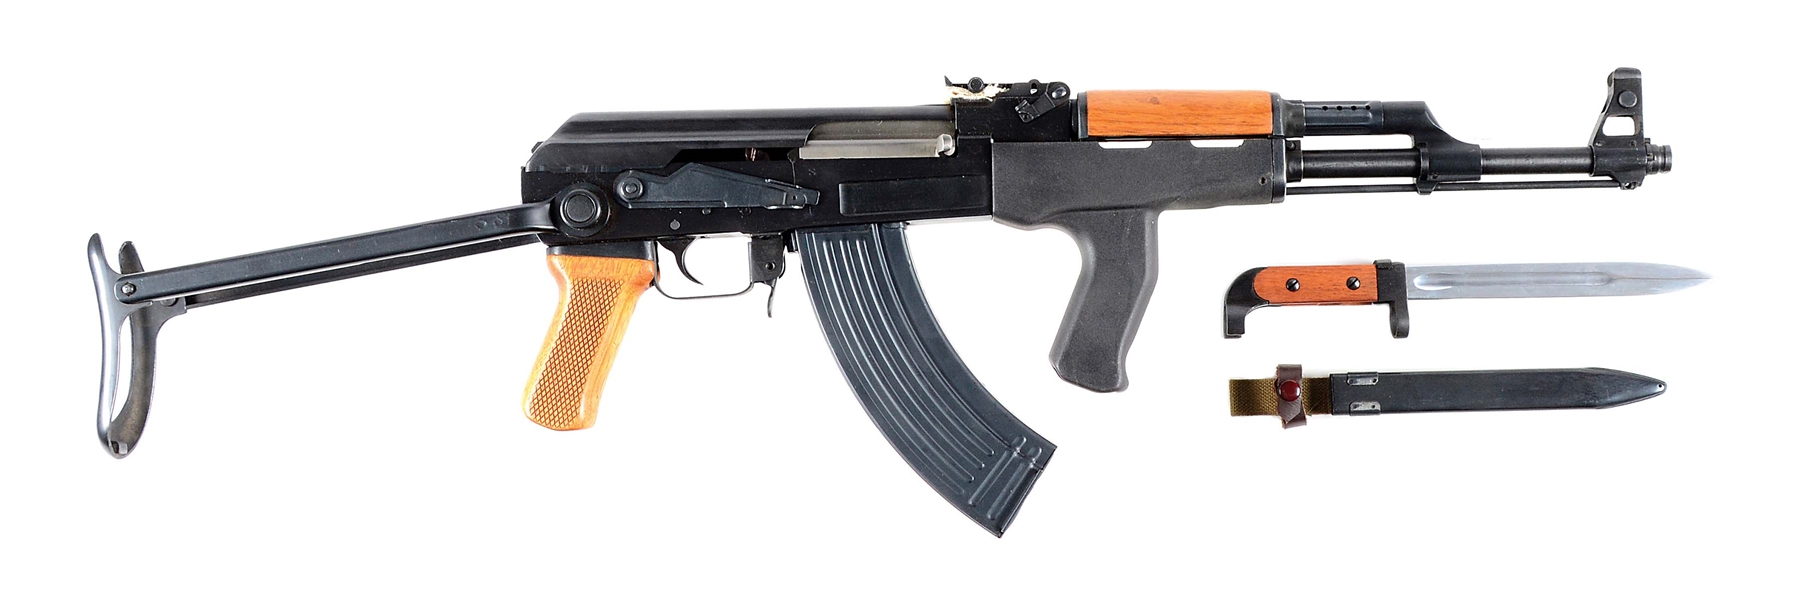 (M) CHINESE POLYTECH LEGEND SERIES AK-47S SEMI AUTOMATIC RIFLE.